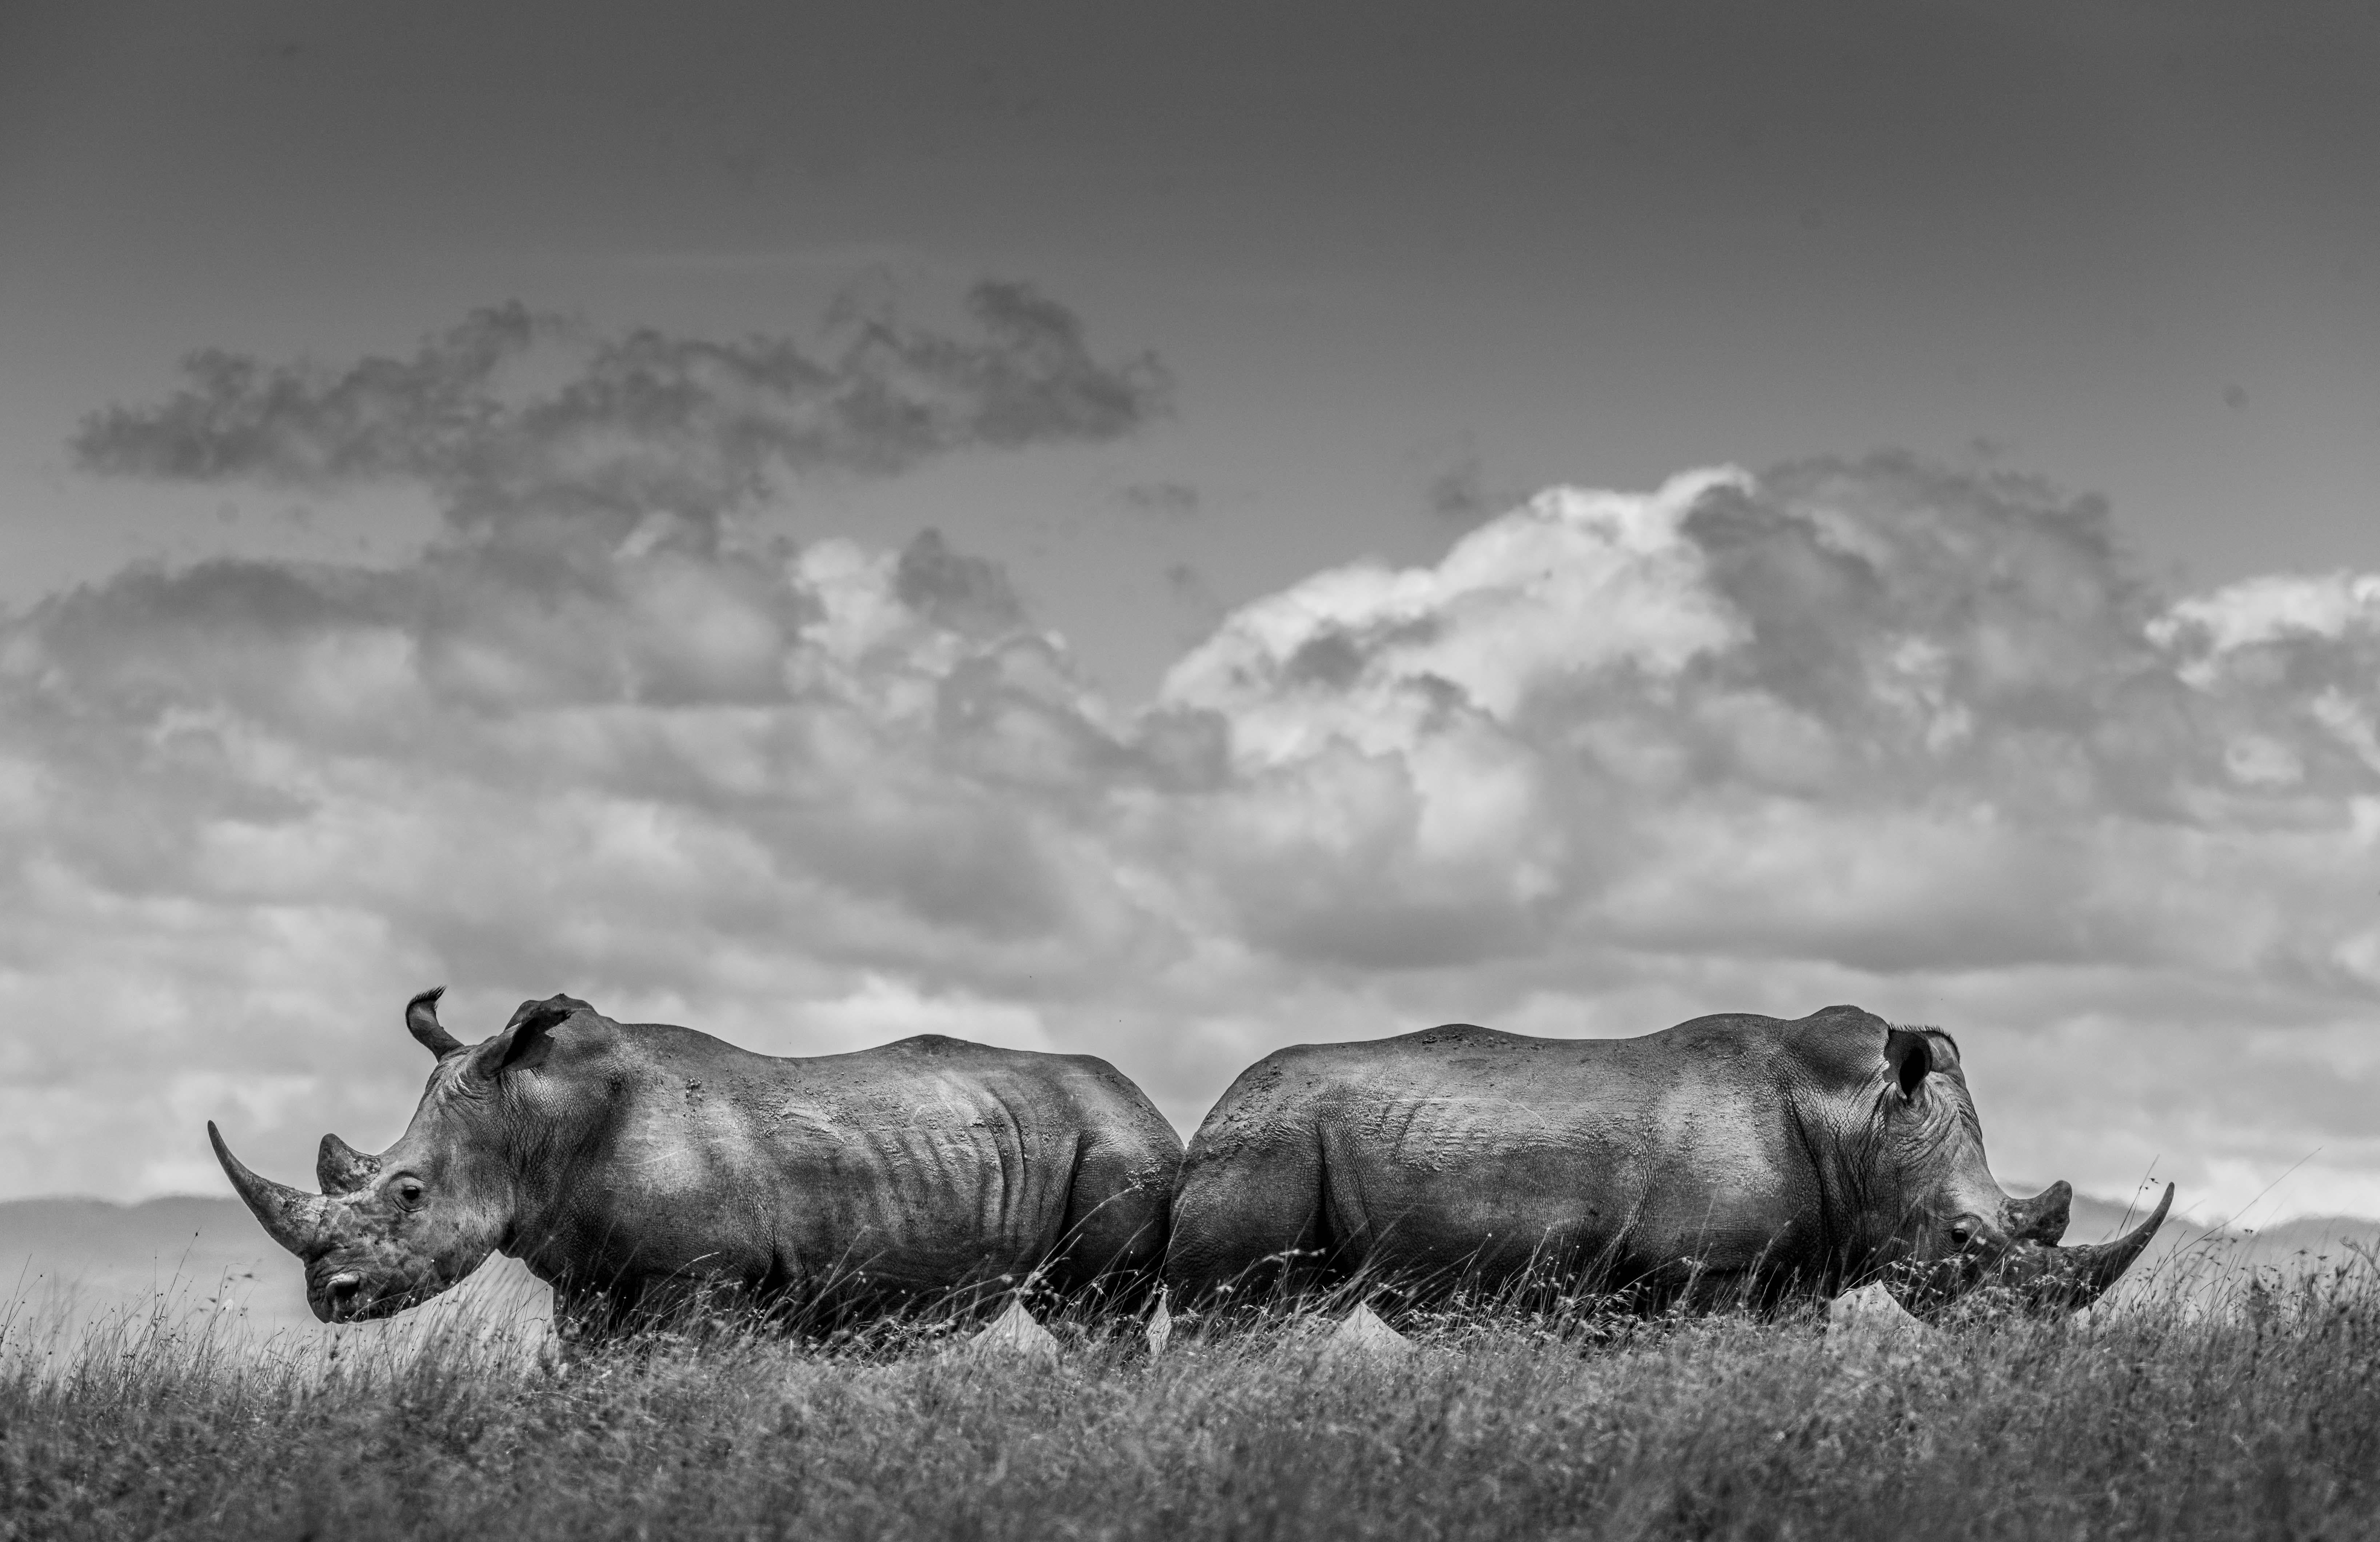 "Je n'étais pas du tout satisfait de mes photos de rhinocéros dans le passé, car j'avais du mal à obtenir des arrière-plans propres avec beaucoup de ciel, ce que je trouve si important dans mon approche. Les rhinocéros blancs sont donc souvent des